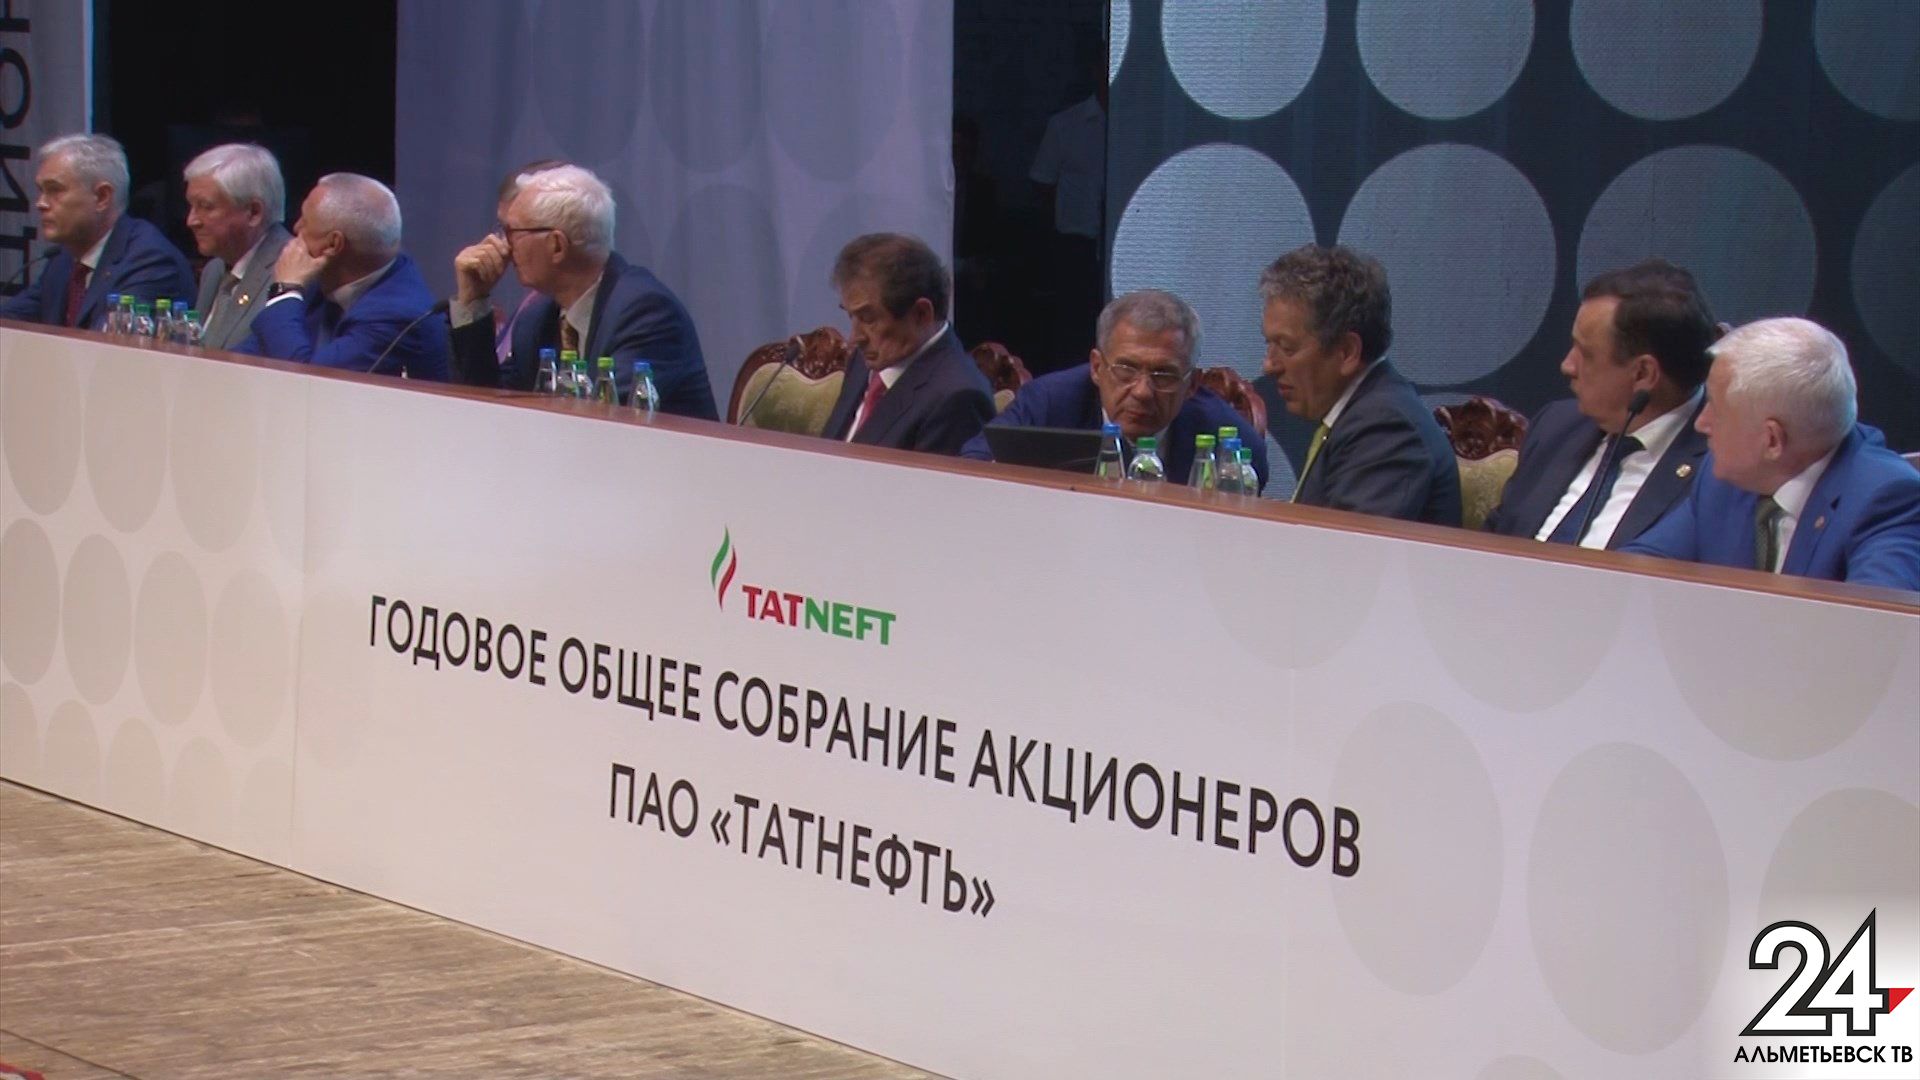 Итоги деятельности за год обсудили на годовом собрании акционеров компании «Татнефть» в Альметьевске